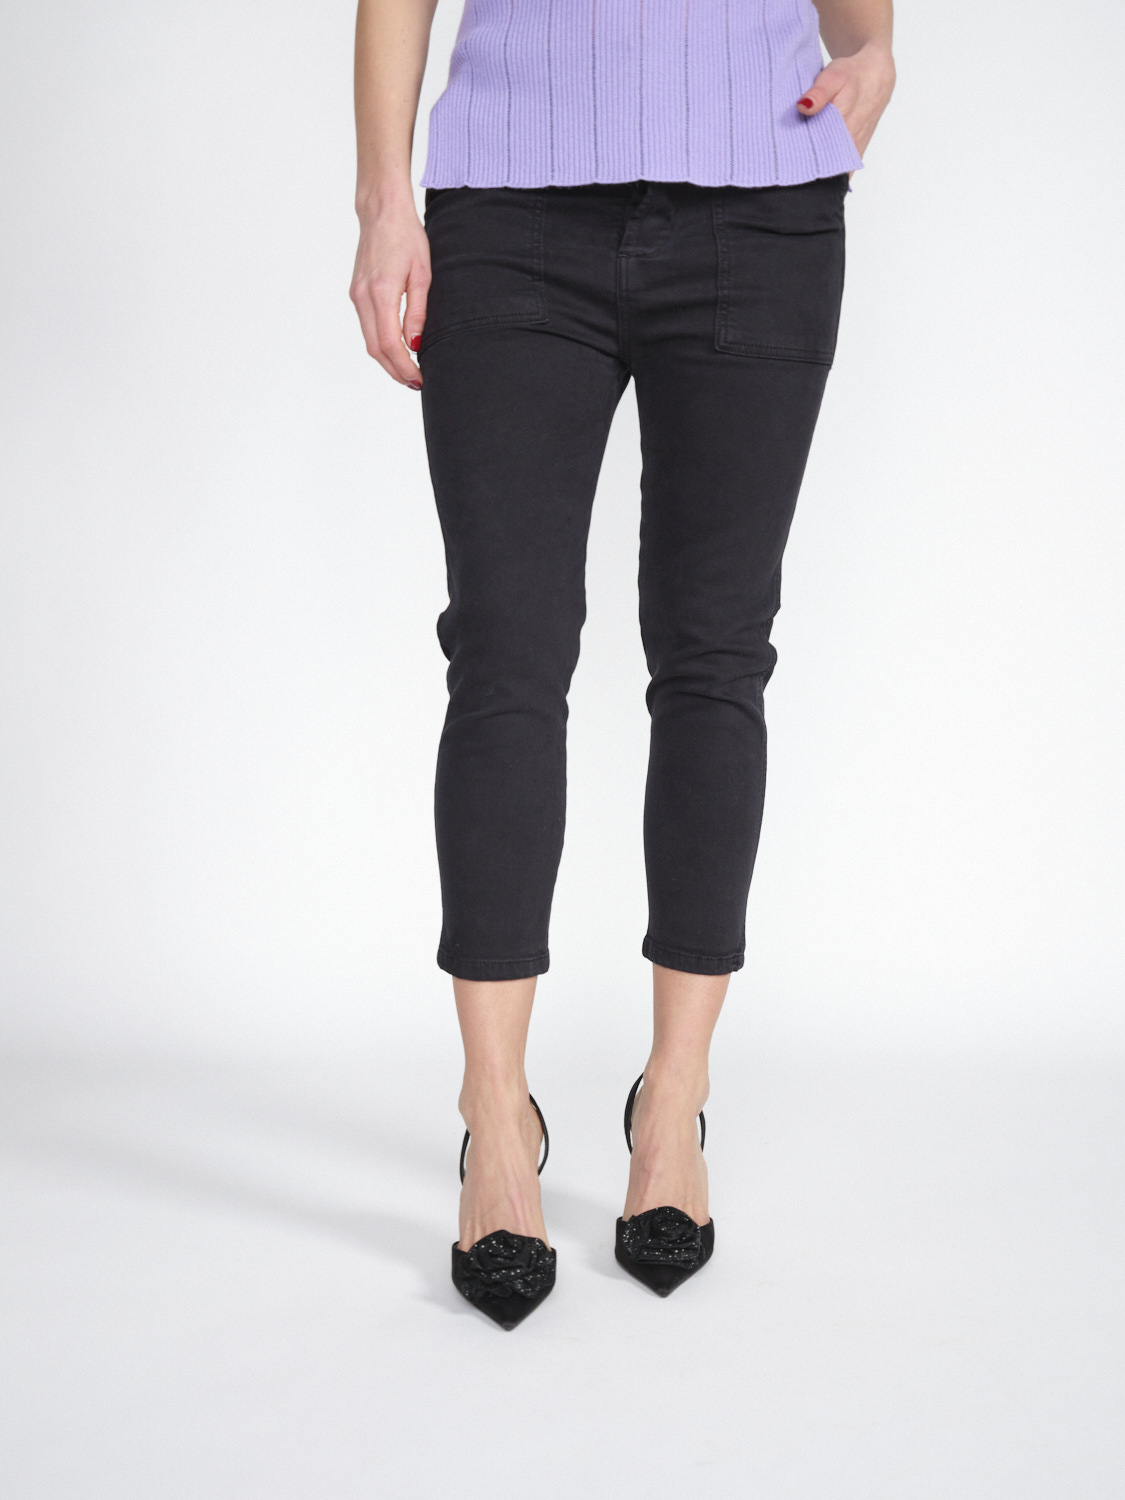 Gitta Banko Pantalones Harlow -pantalones tres cuartos de algodón elástico   negro XS/S